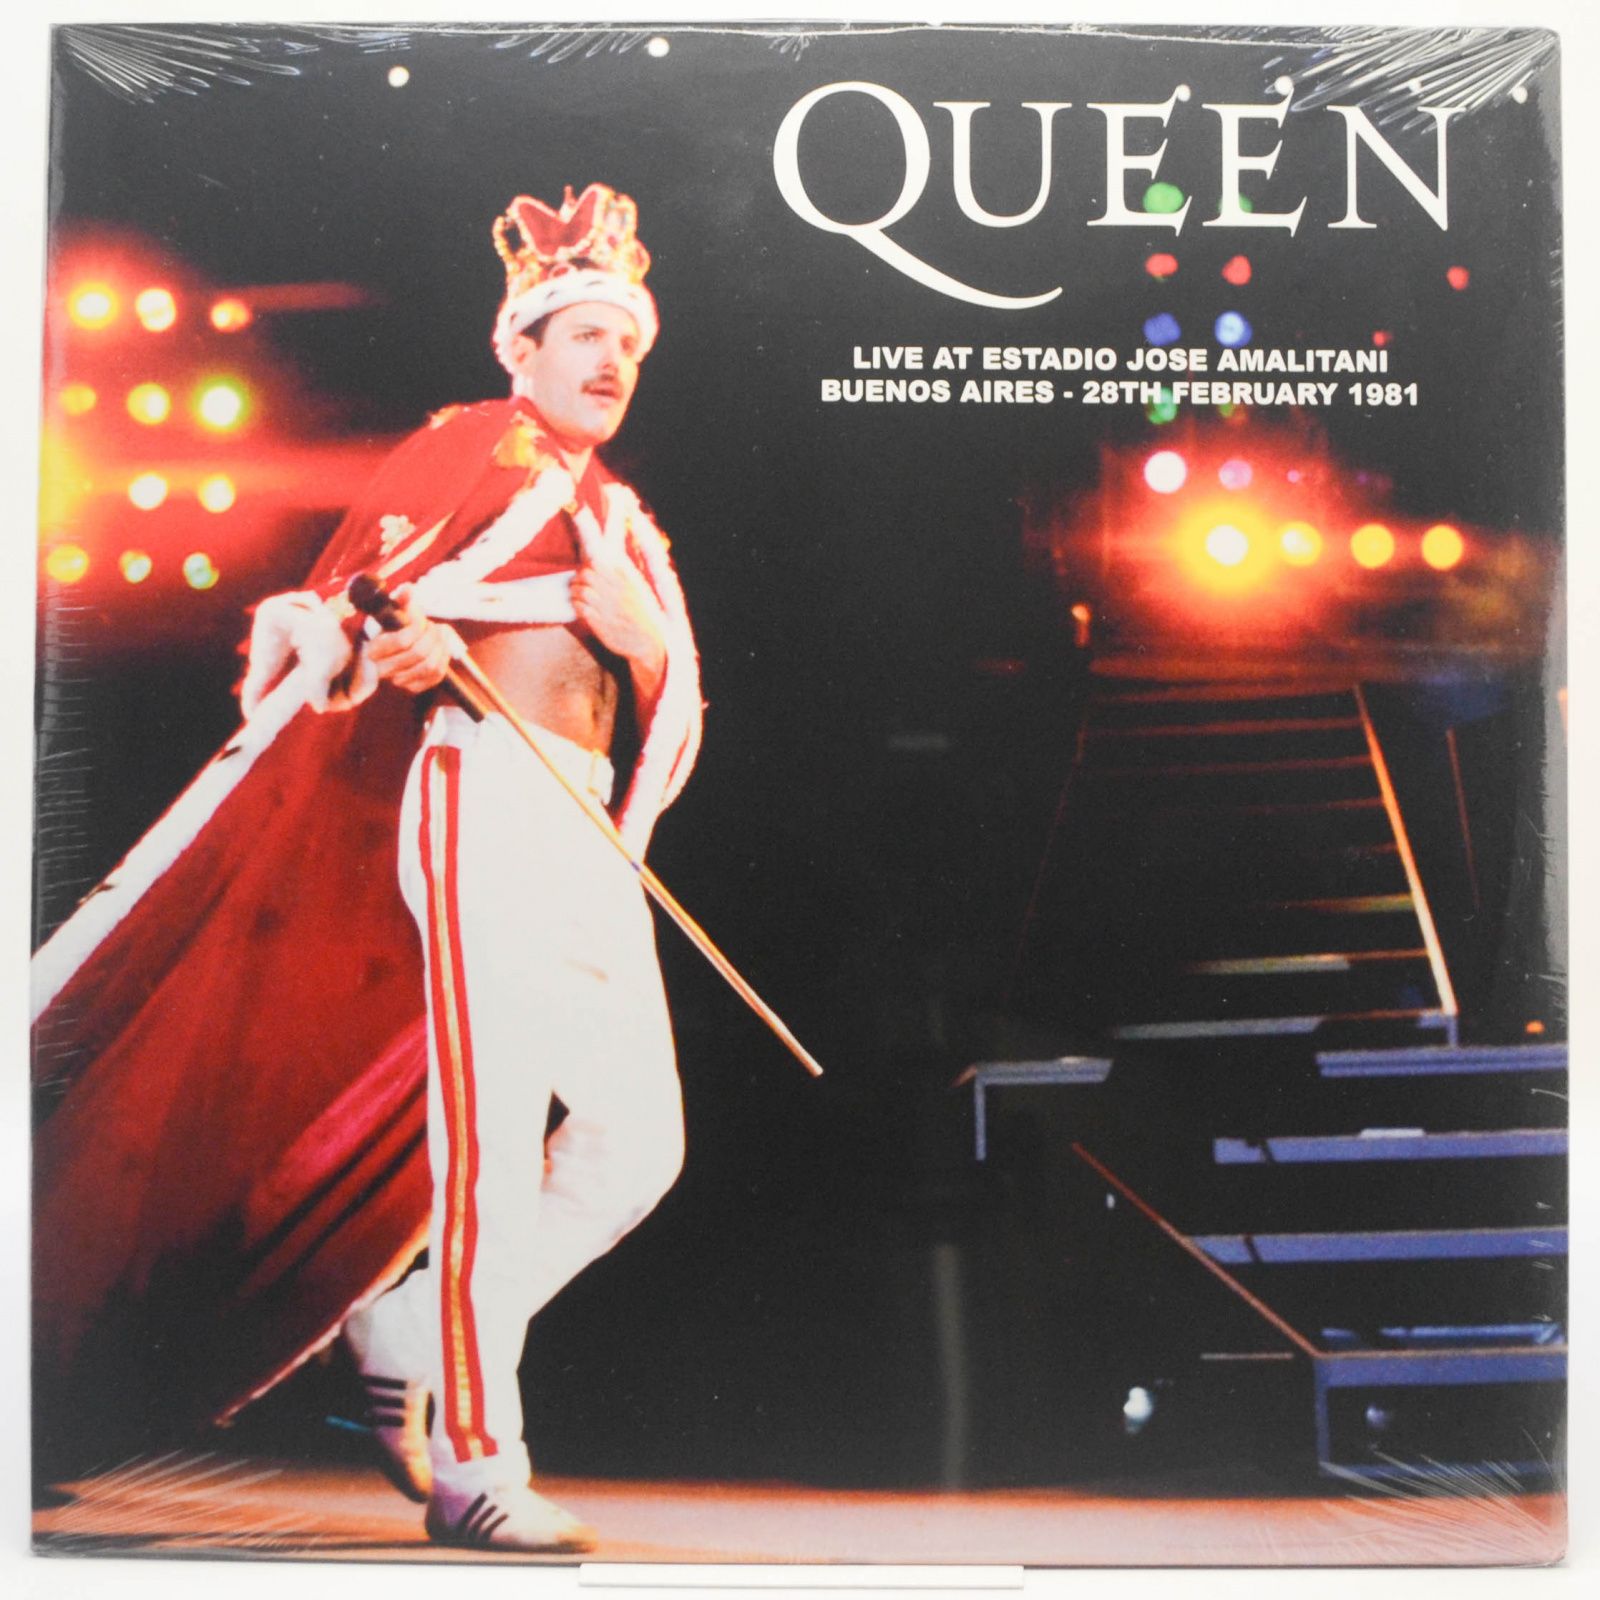 Queen — Live At Estadio Jose Amalitani Buenos Aires - 28th February 1981, 2019